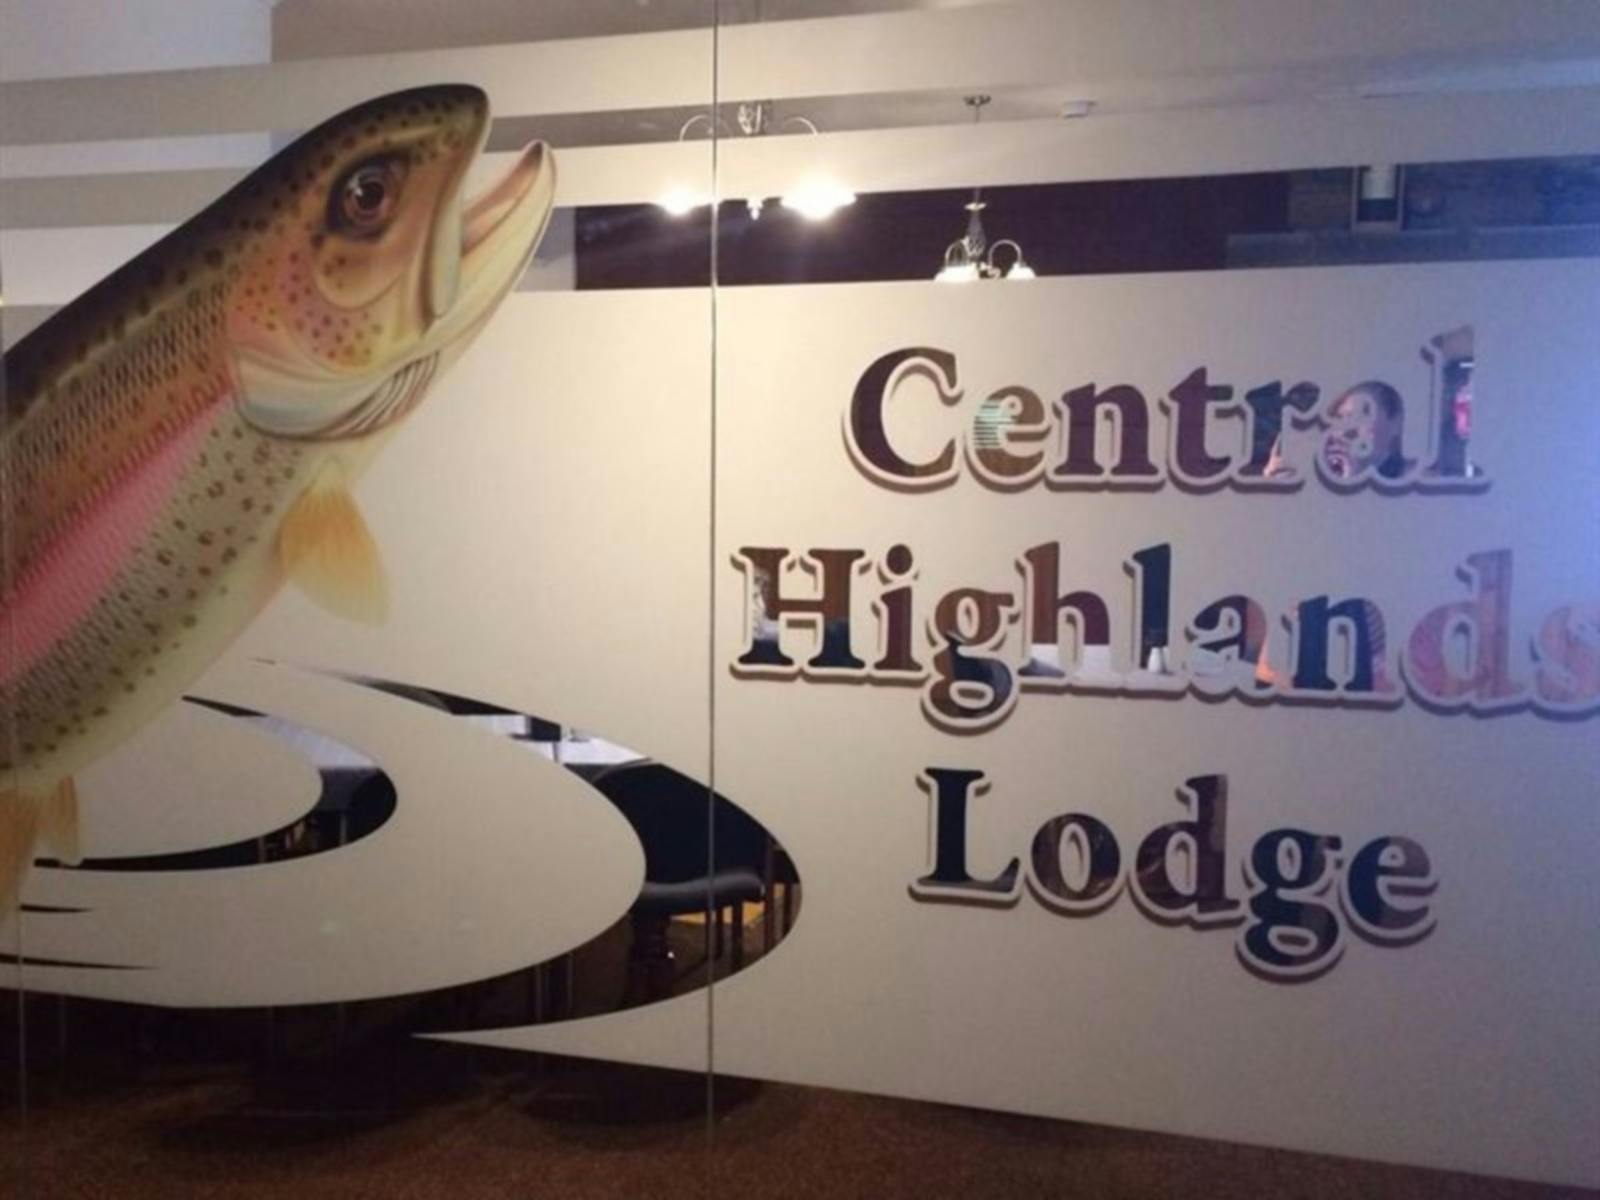 Central Highlands Lodge